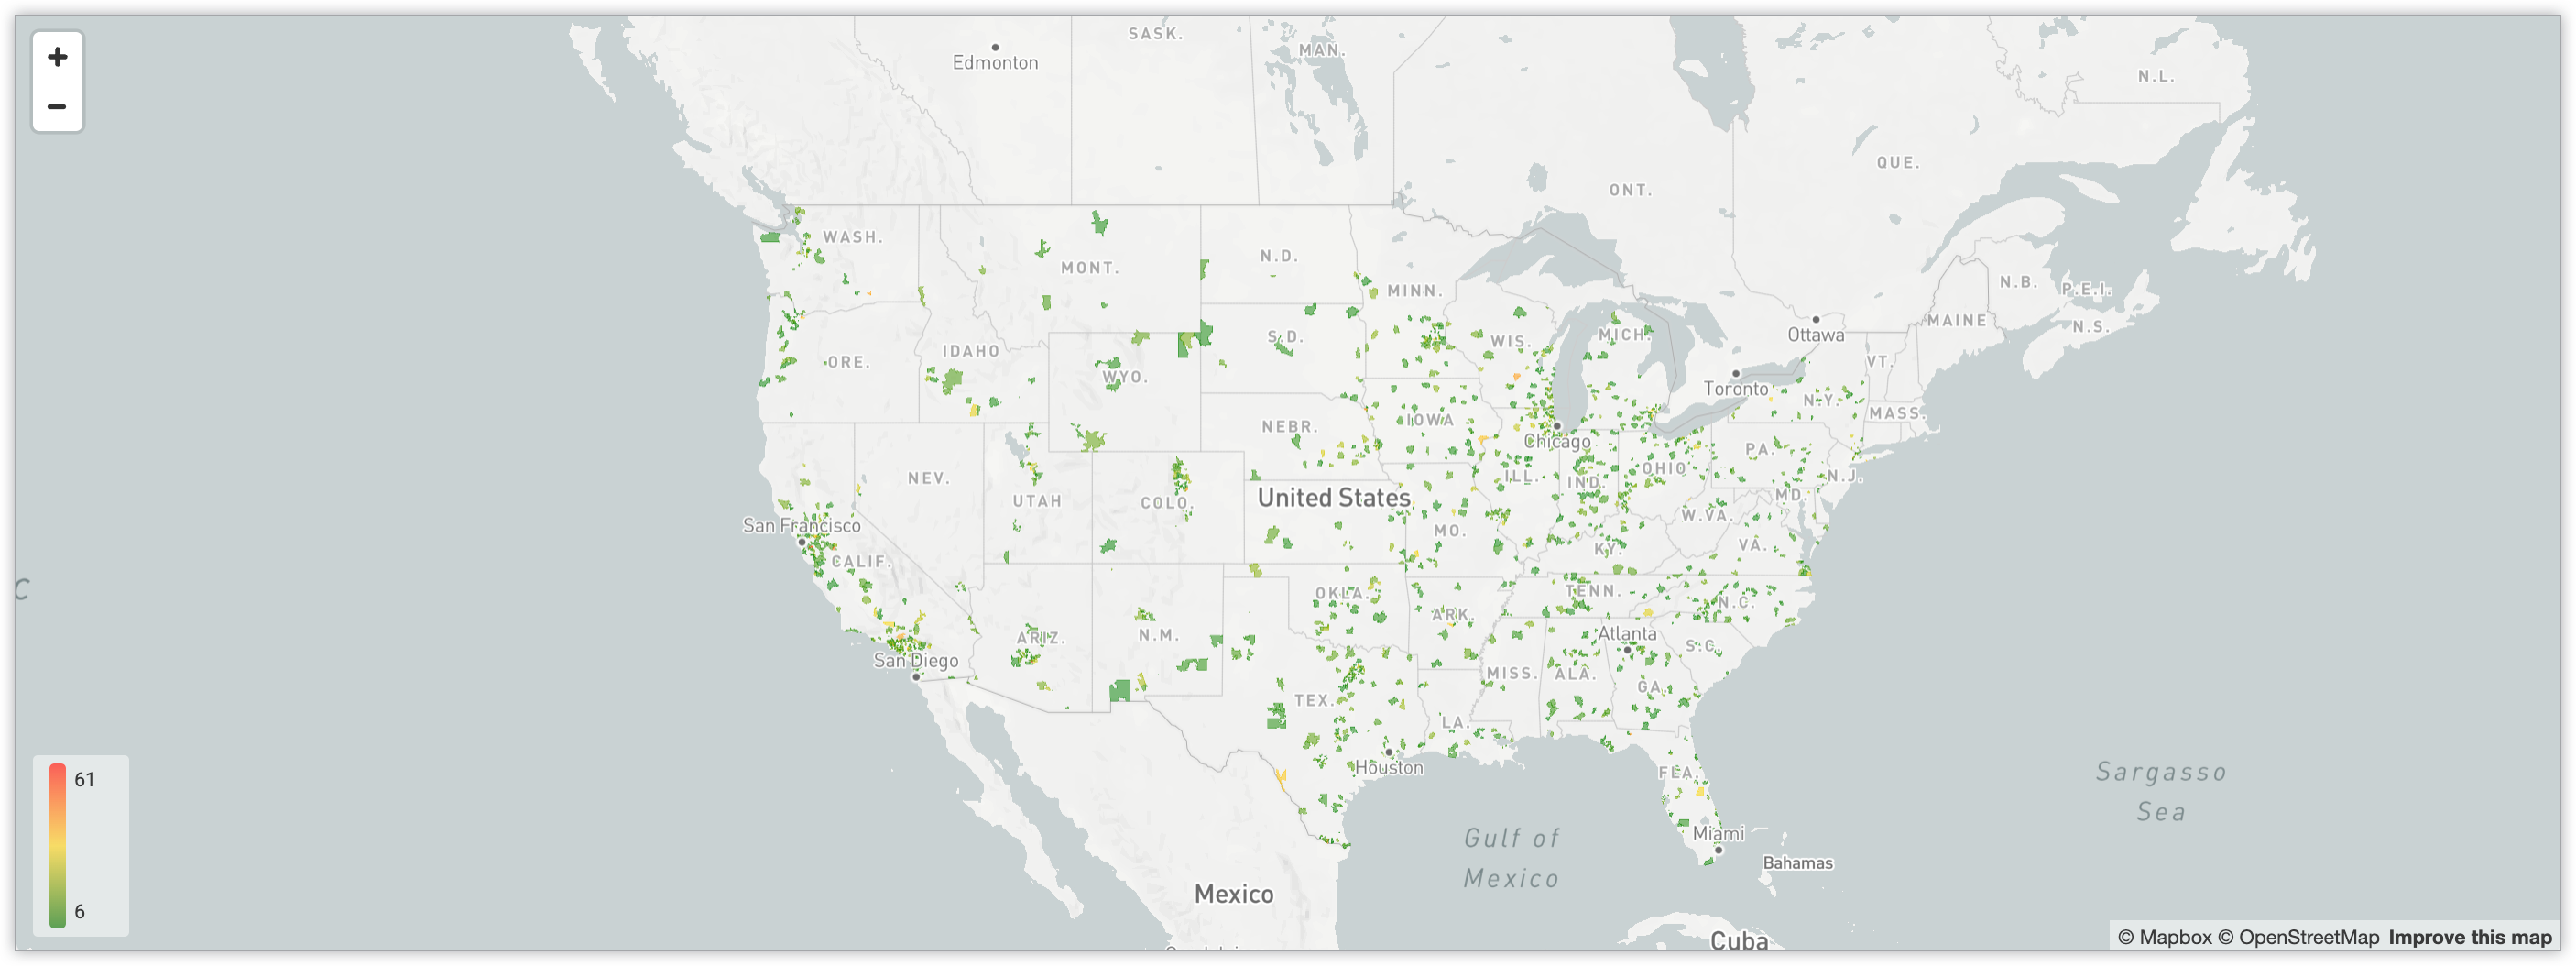 Mapa interativo mostrando a quantidade de usuários em diferentes CEPs nos Estados Unidos usando um sistema de codificação de cores gradiente.